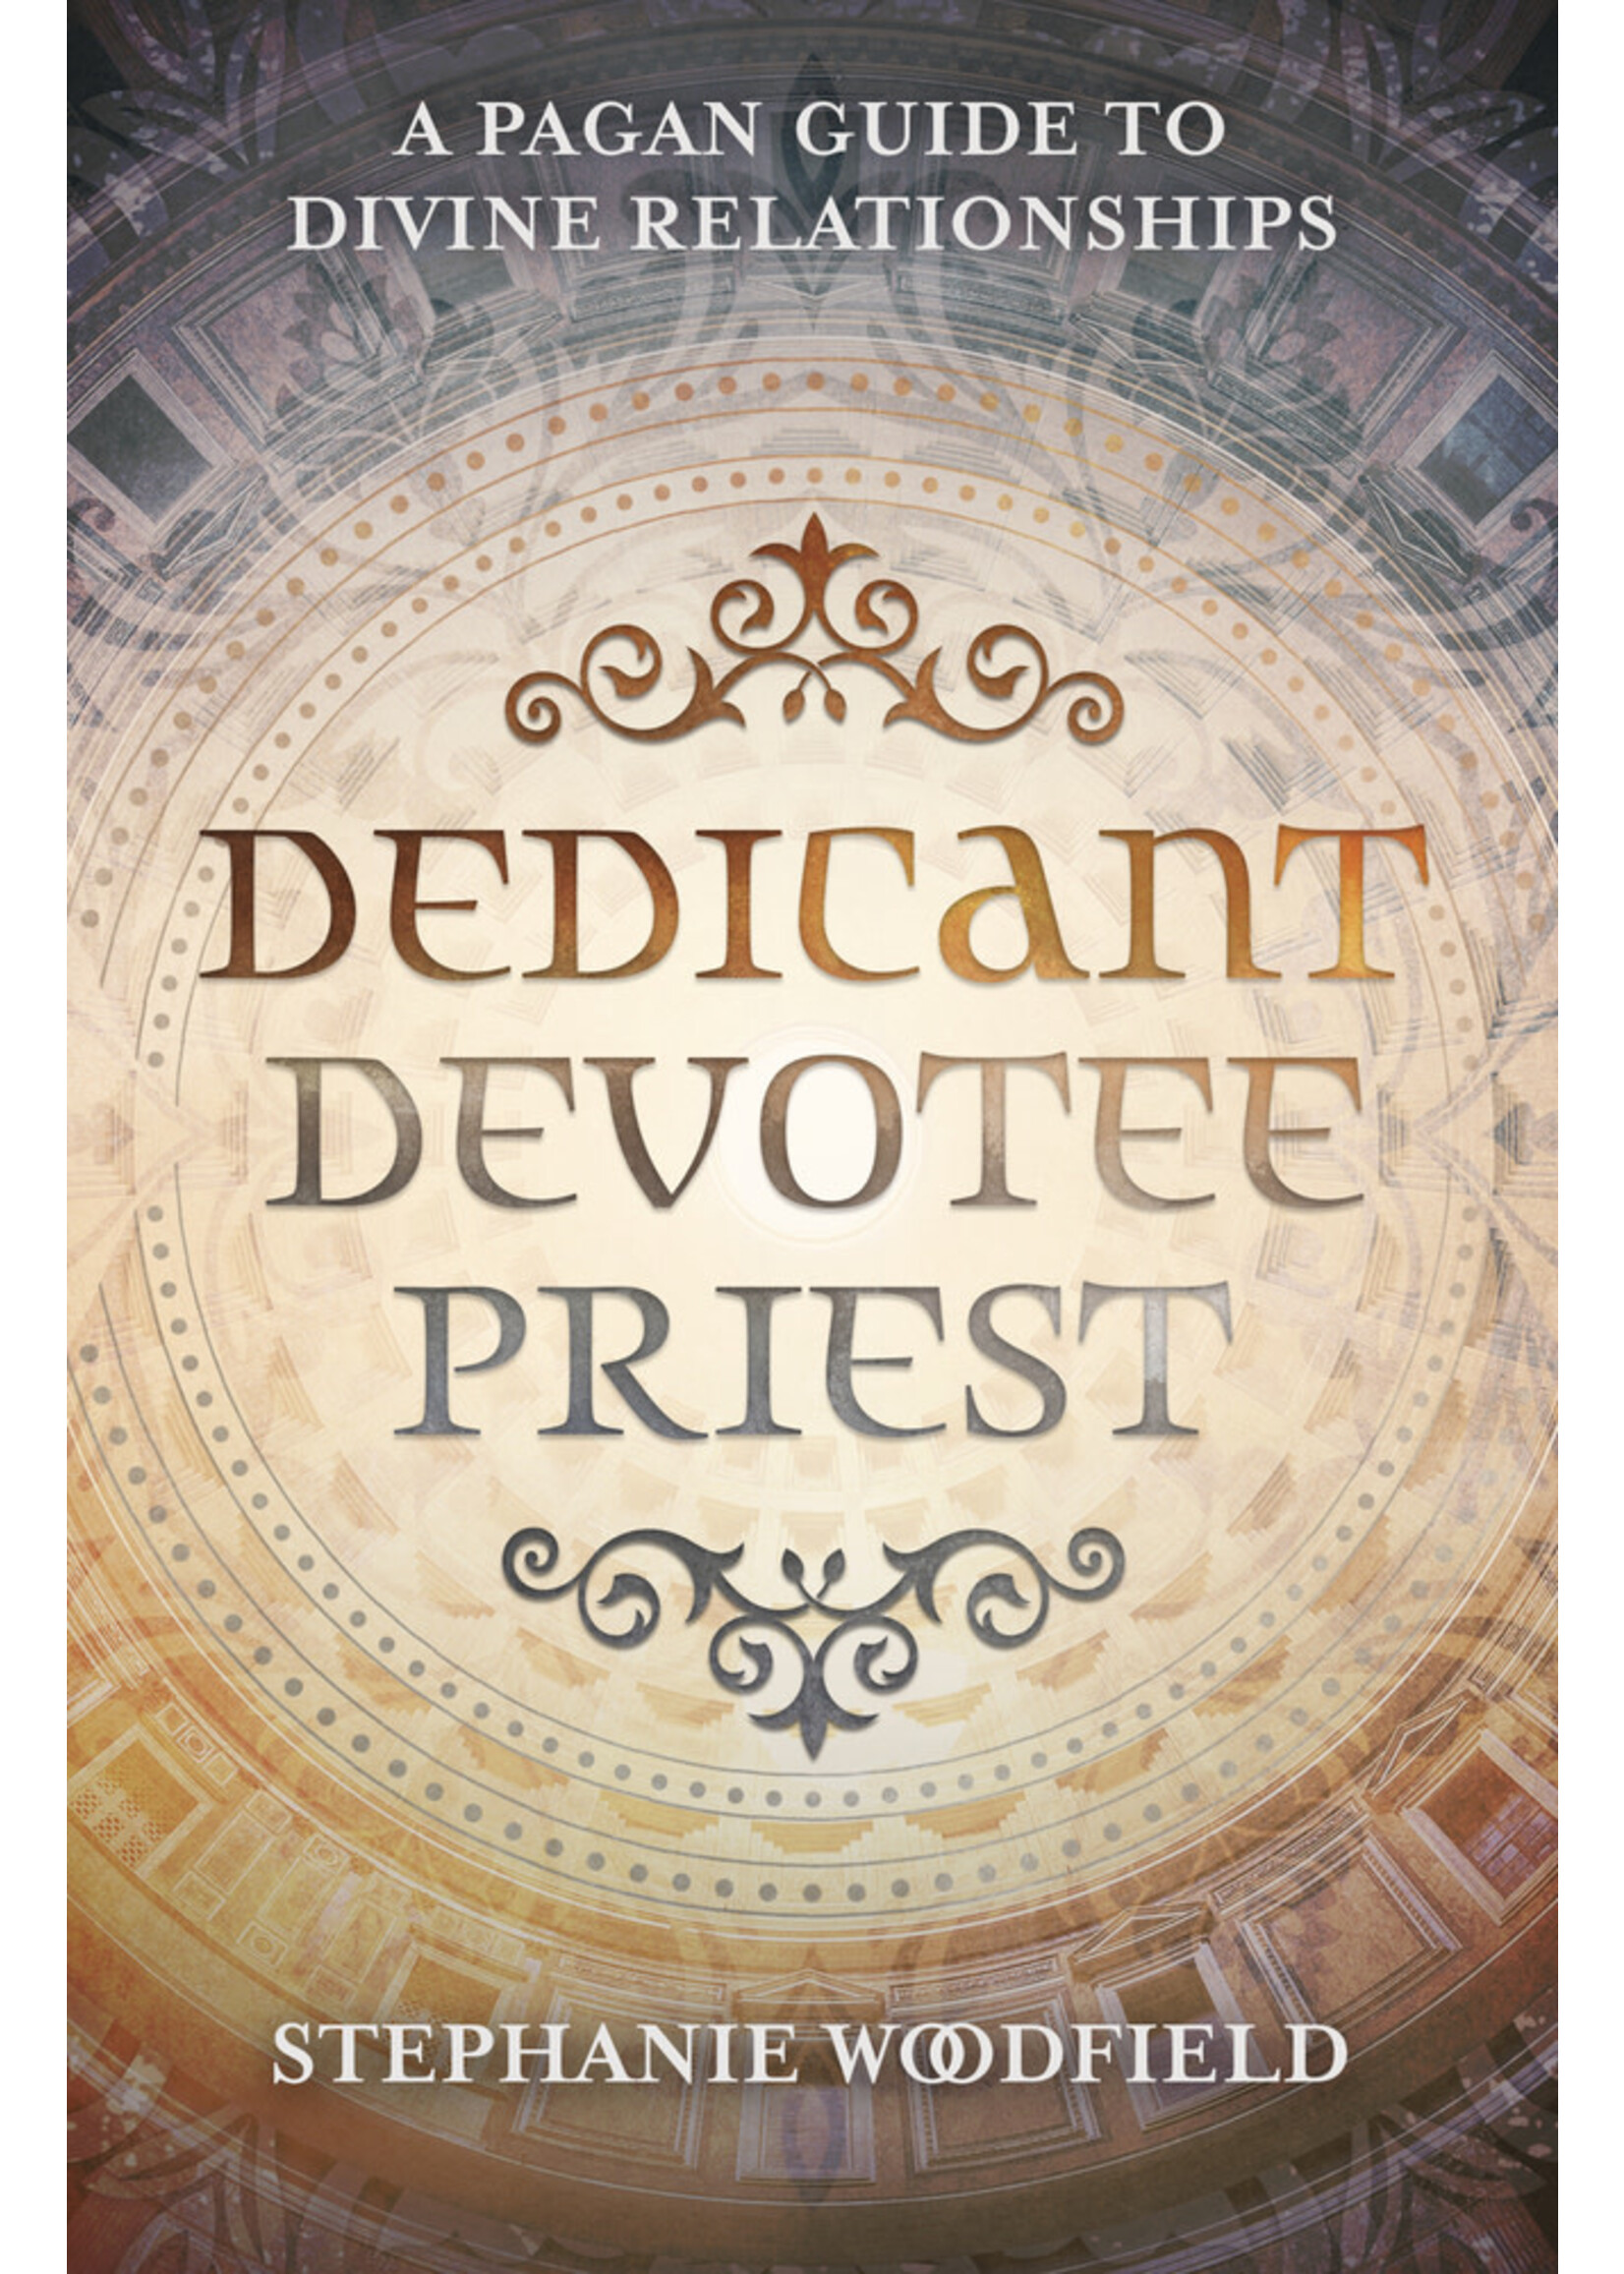 Dedicant Devotee Priest by Stephanie Woodfield